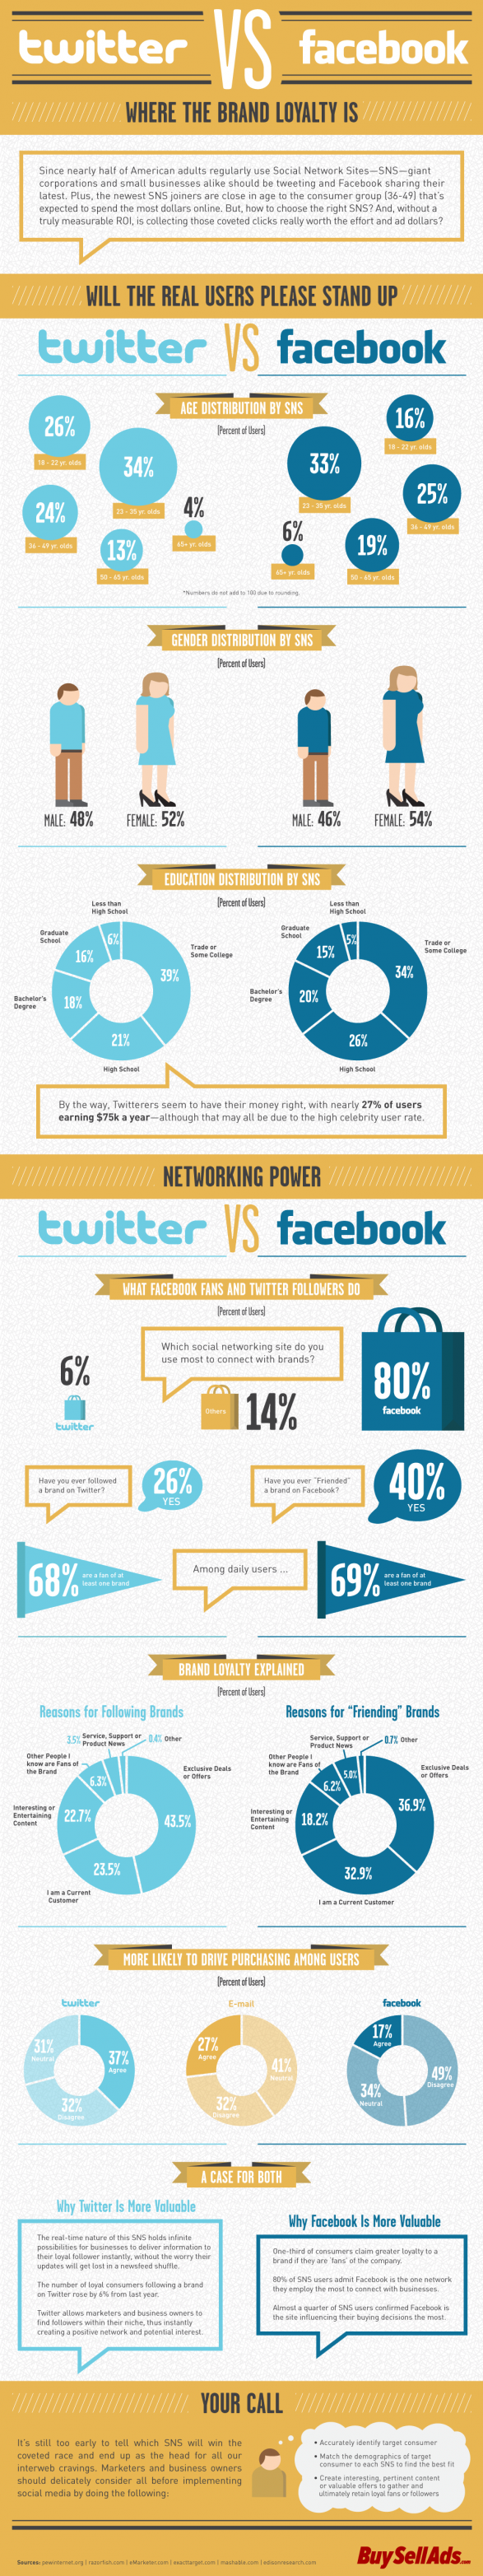 Twitter vs Facebook : les internautes et leur rapport aux marques selon le réseau utilisé